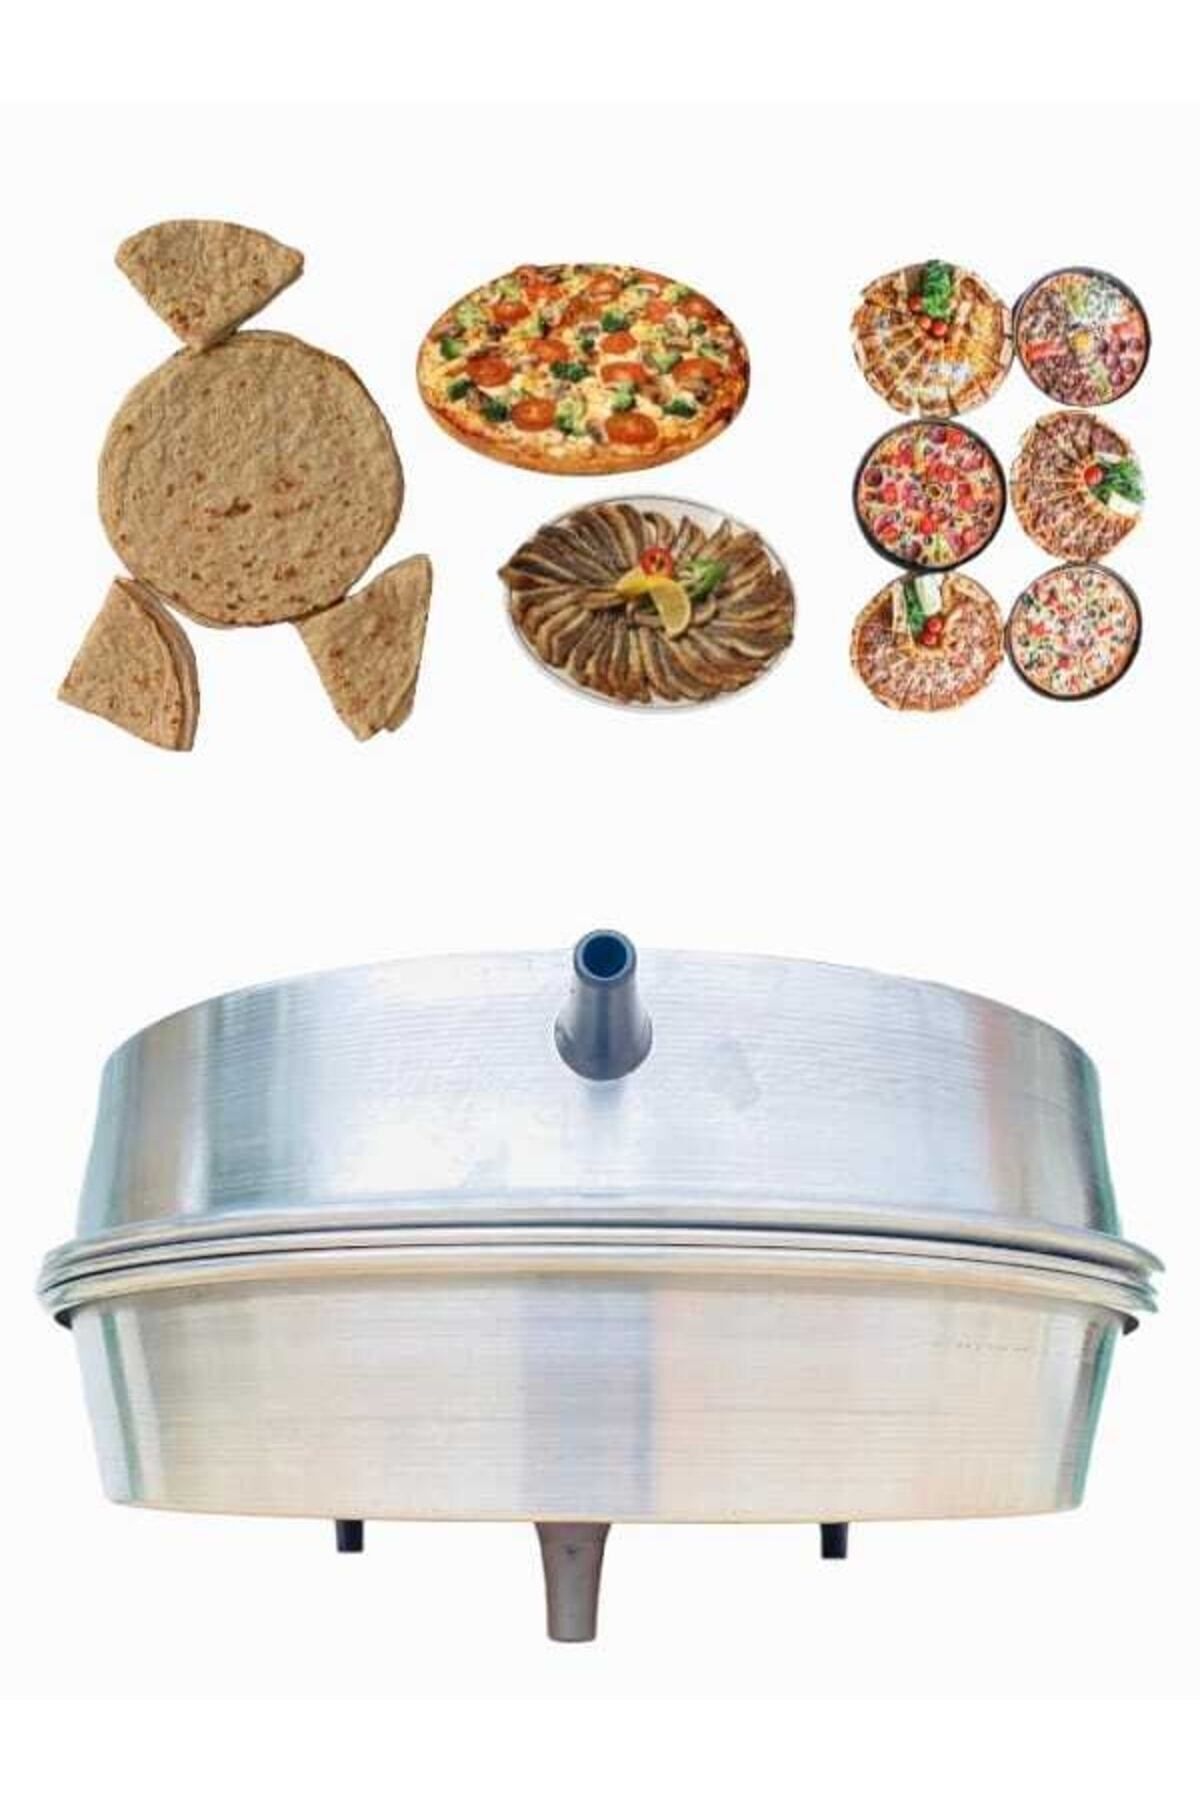 AHENK TEKNO Elektrikli Tandır Ekmek, Pizza, Lahmacun, Pide Pişirici, Alüminyum Gövde